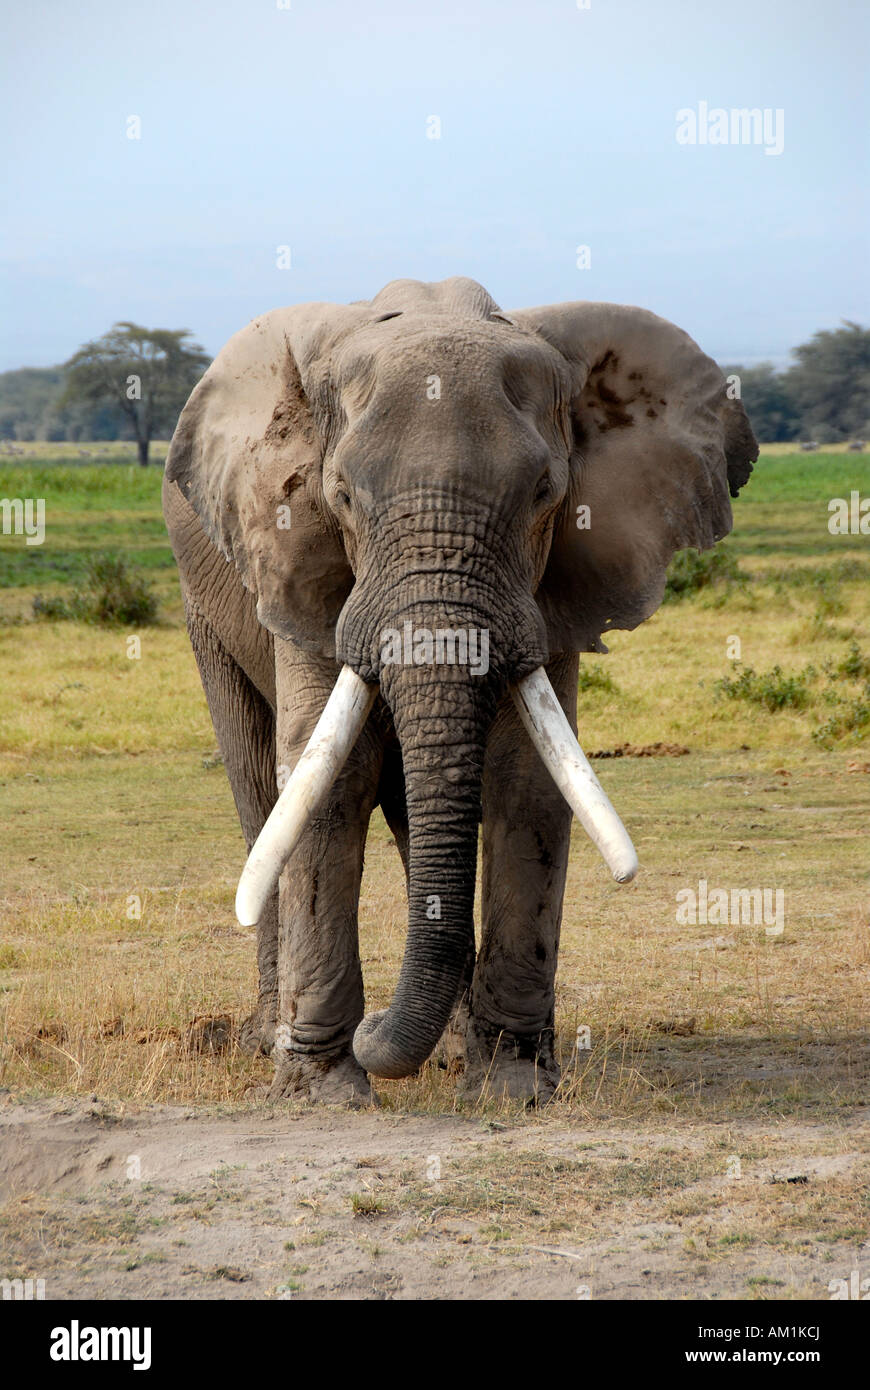 Big elephant with large tusks Amboseli National Park Kenya Stock Photo